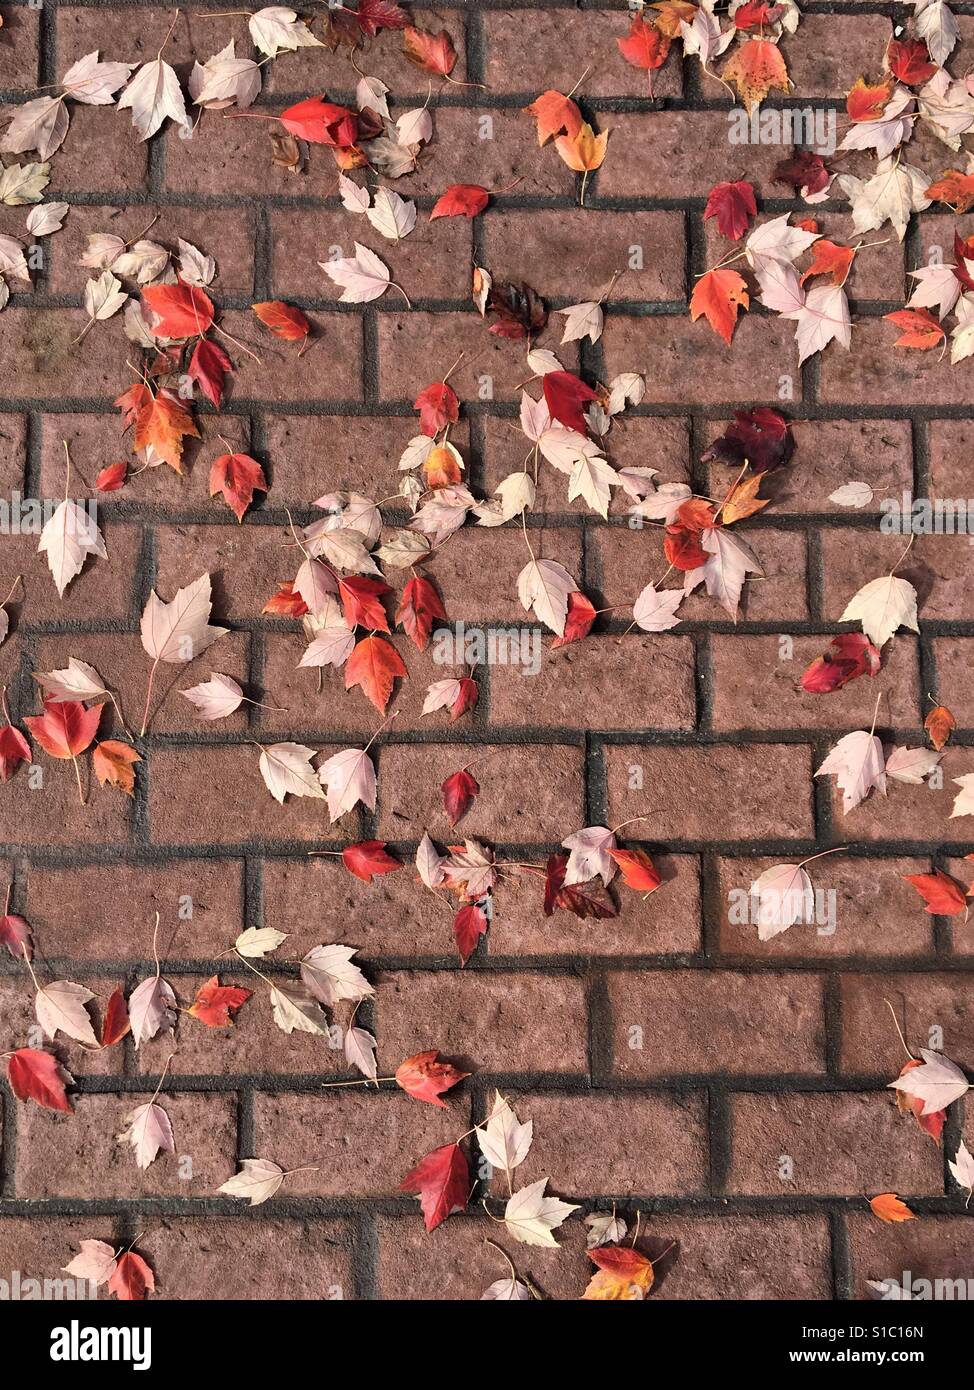 Les feuilles d'automne sur le trottoir en brique Banque D'Images